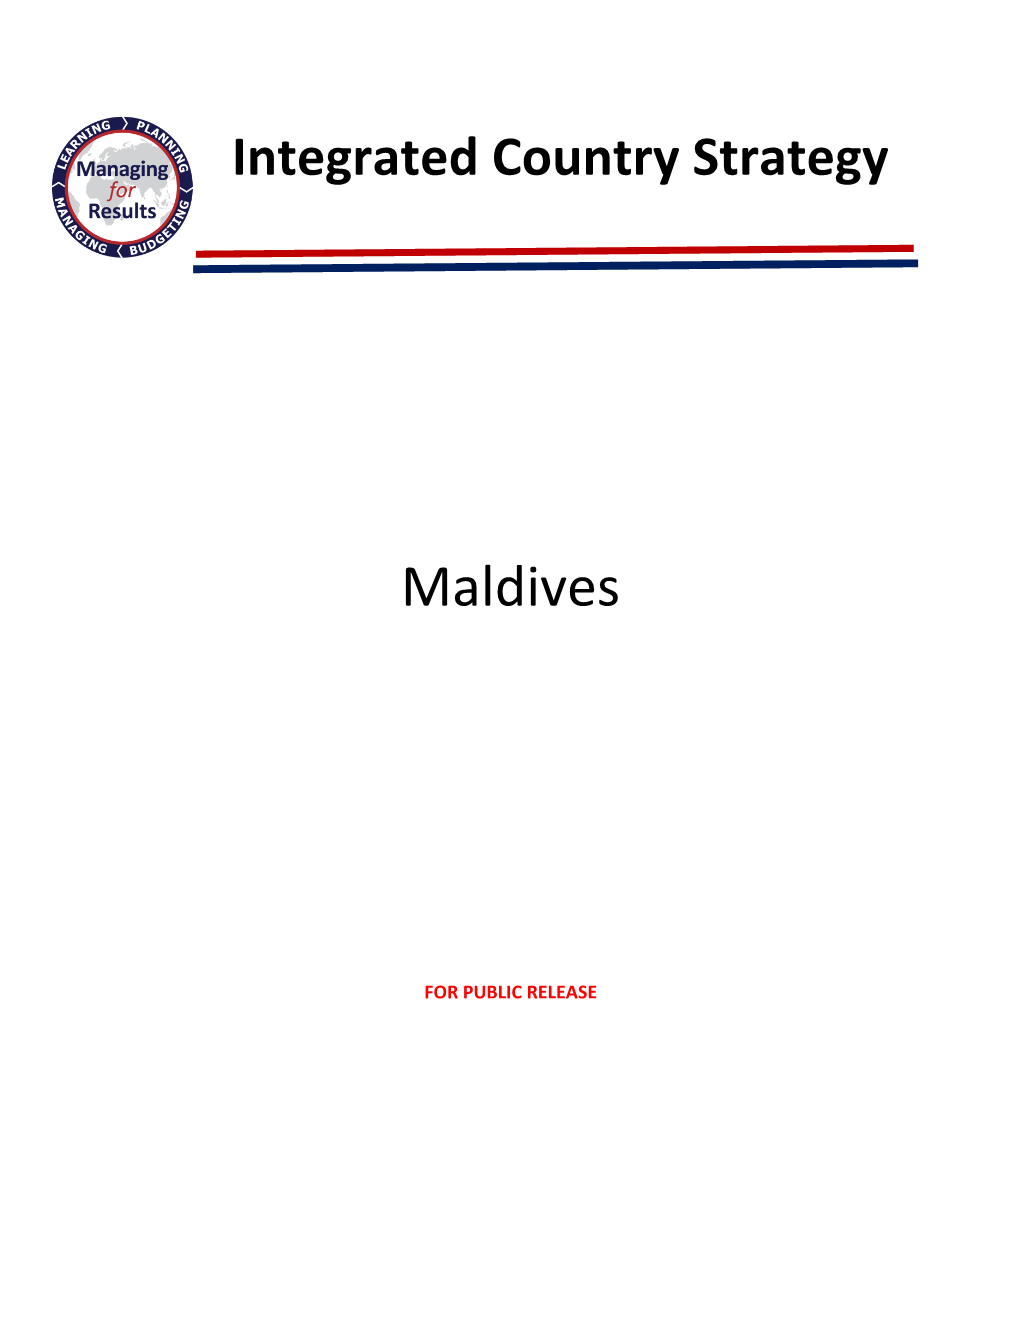 ICS Maldives UNCLASS